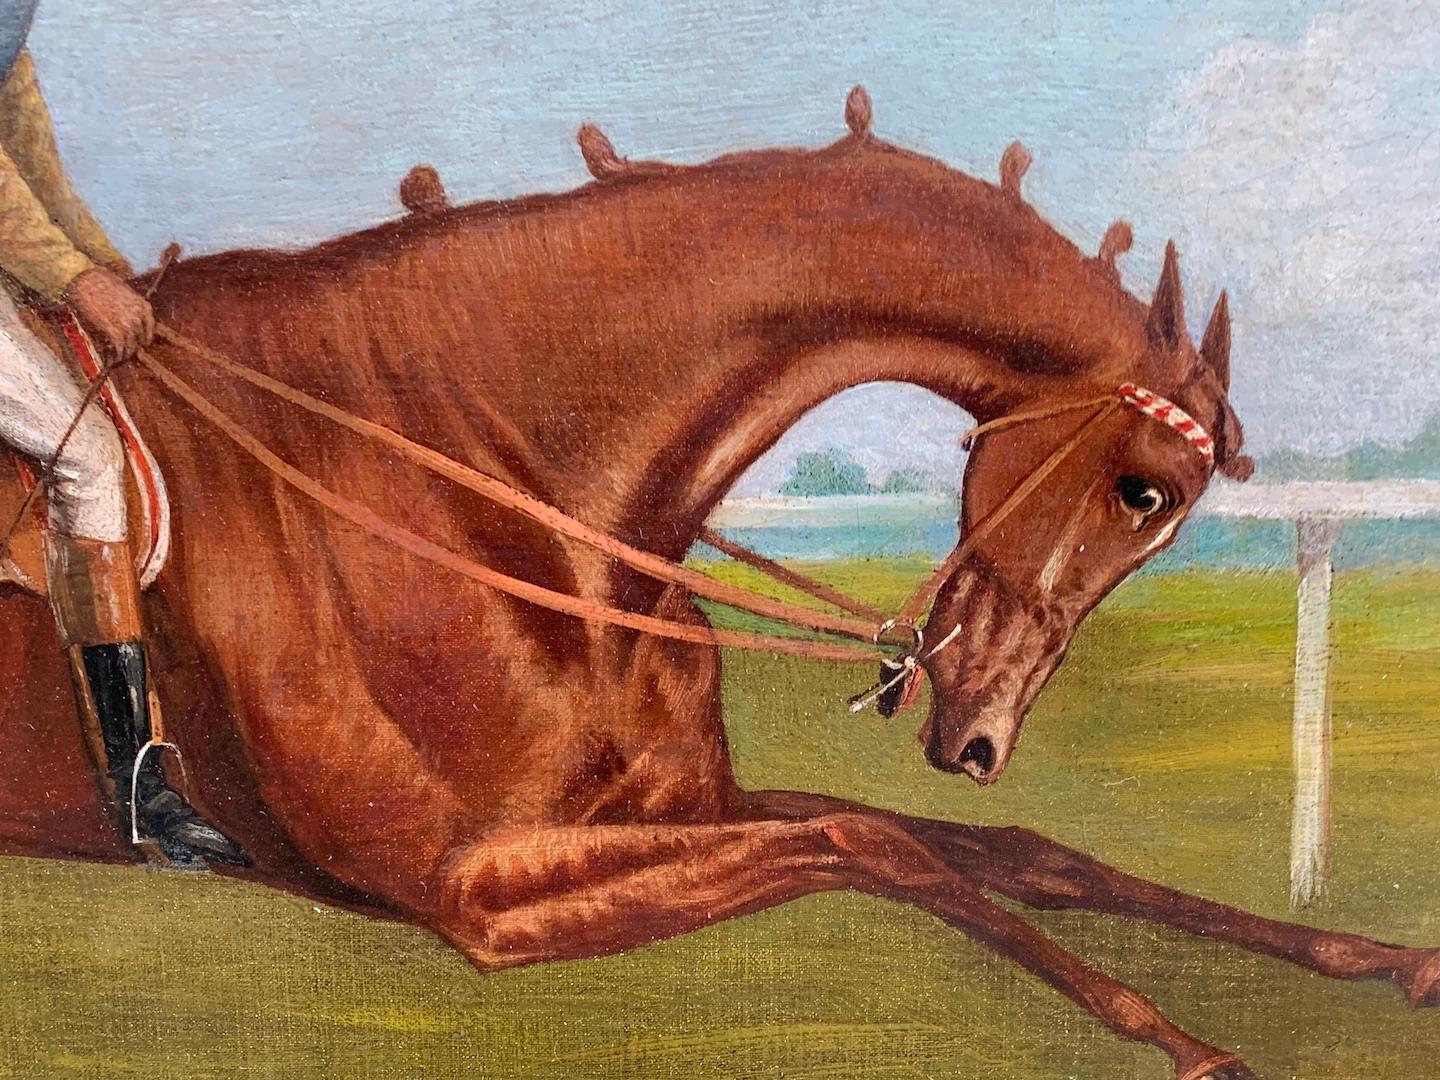  19e siècle Anglais Antique Scène de course de chevaux dans un paysage avec Jockey en haut.

Magnifique scène de course de chevaux anglaise très bien peinte. D'un style similaire à celui de John Frederick Herring, cette pièce représente une scène